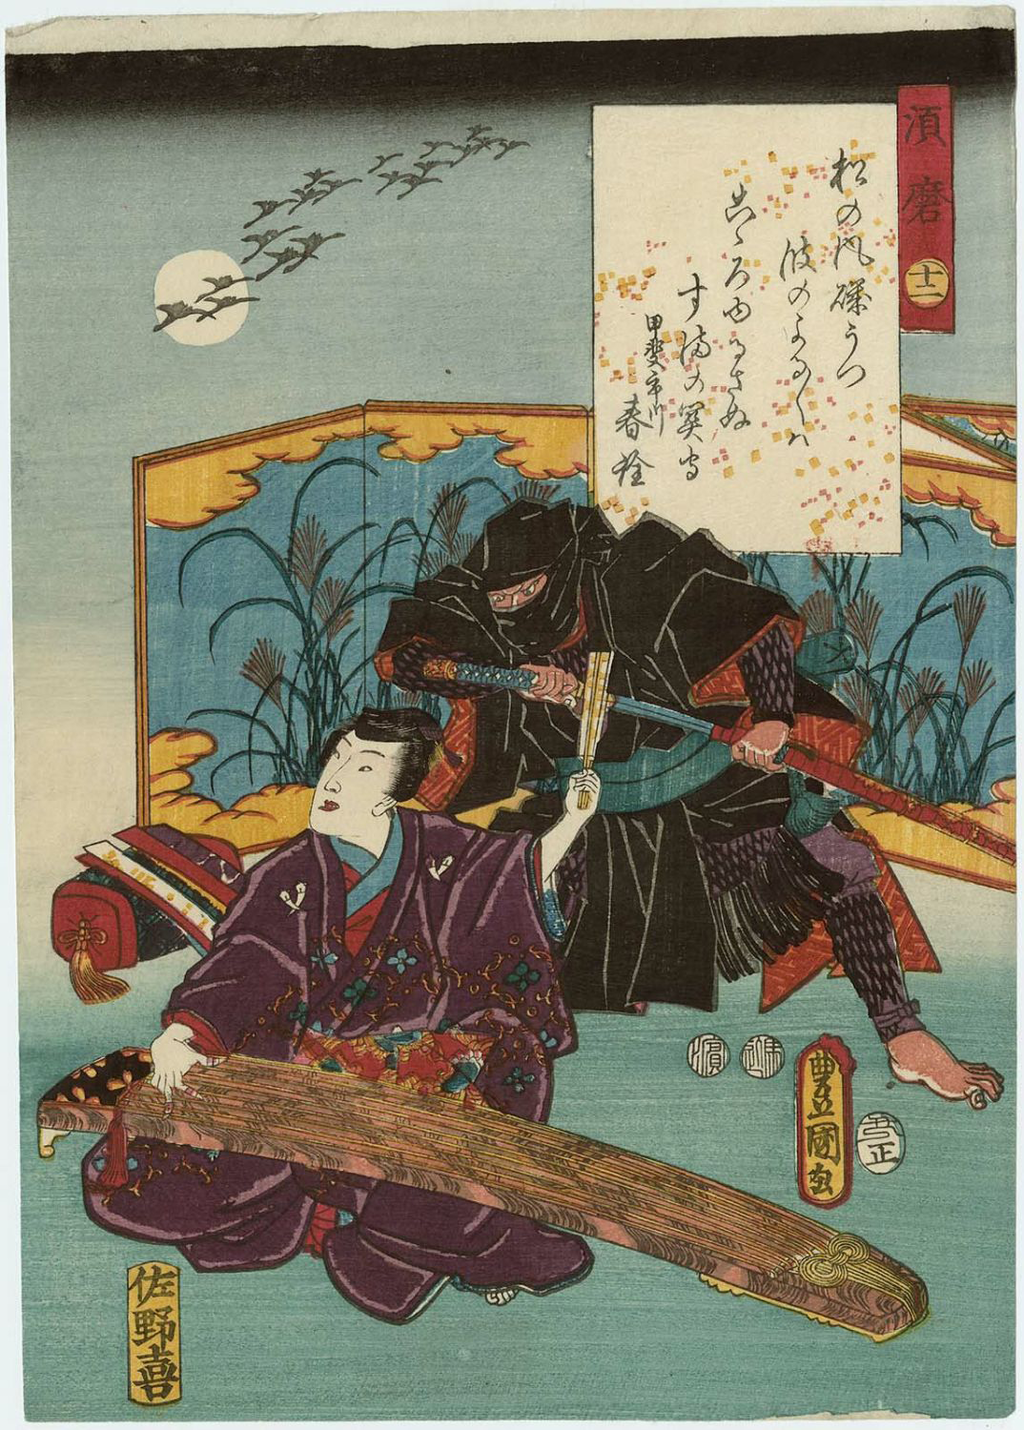 Træbloktryk på papir kaldet "Prince Hikaru and the Ninja"